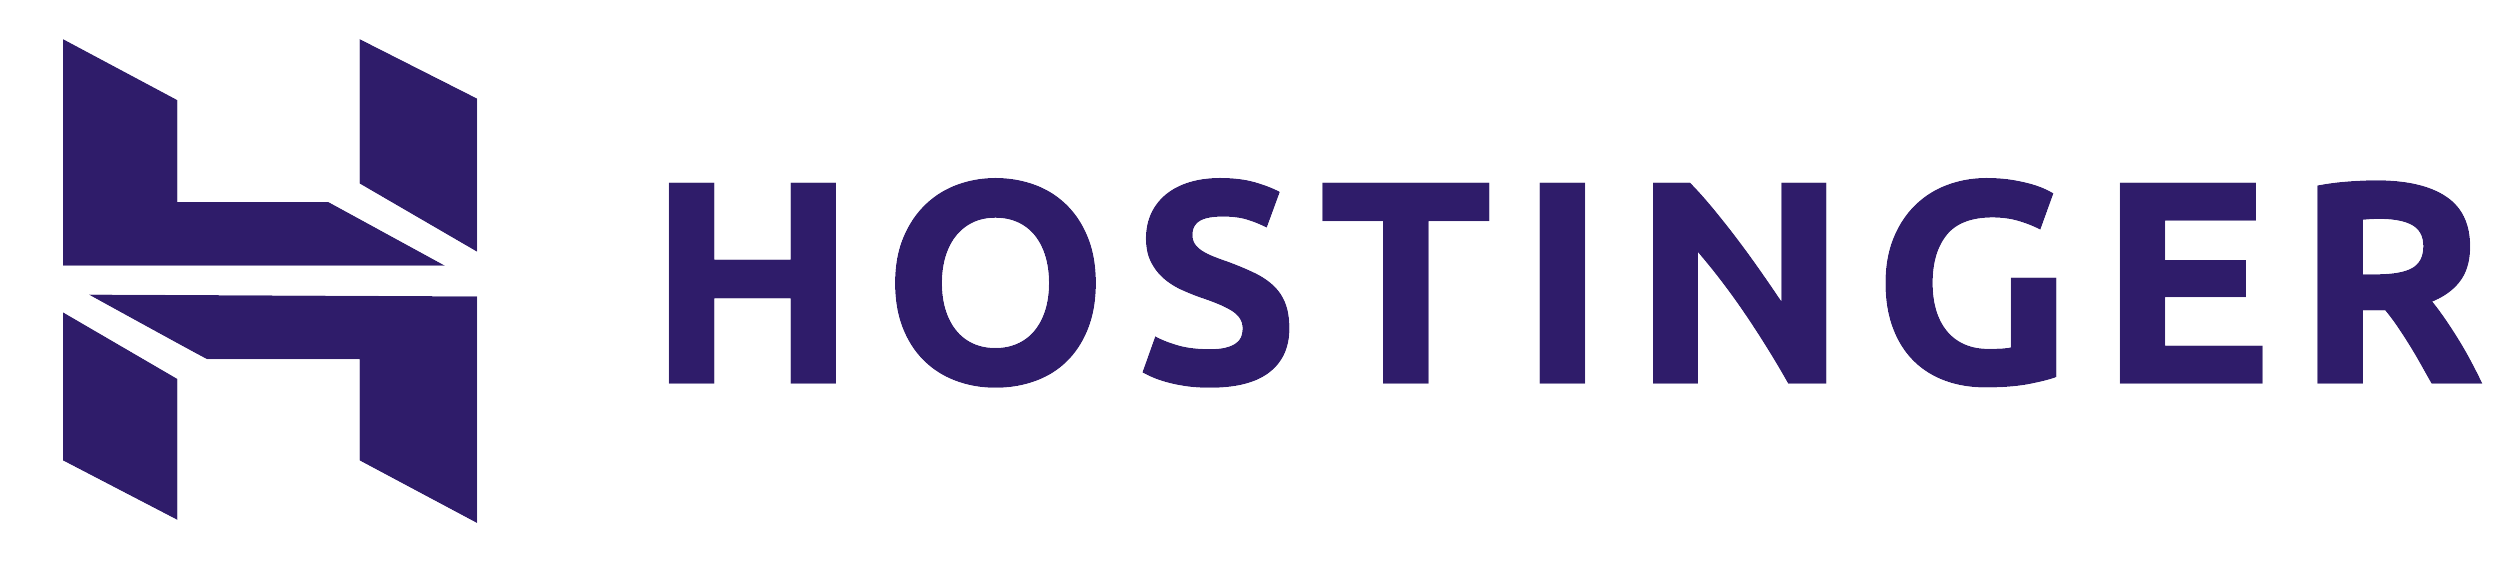 logo Hostinger